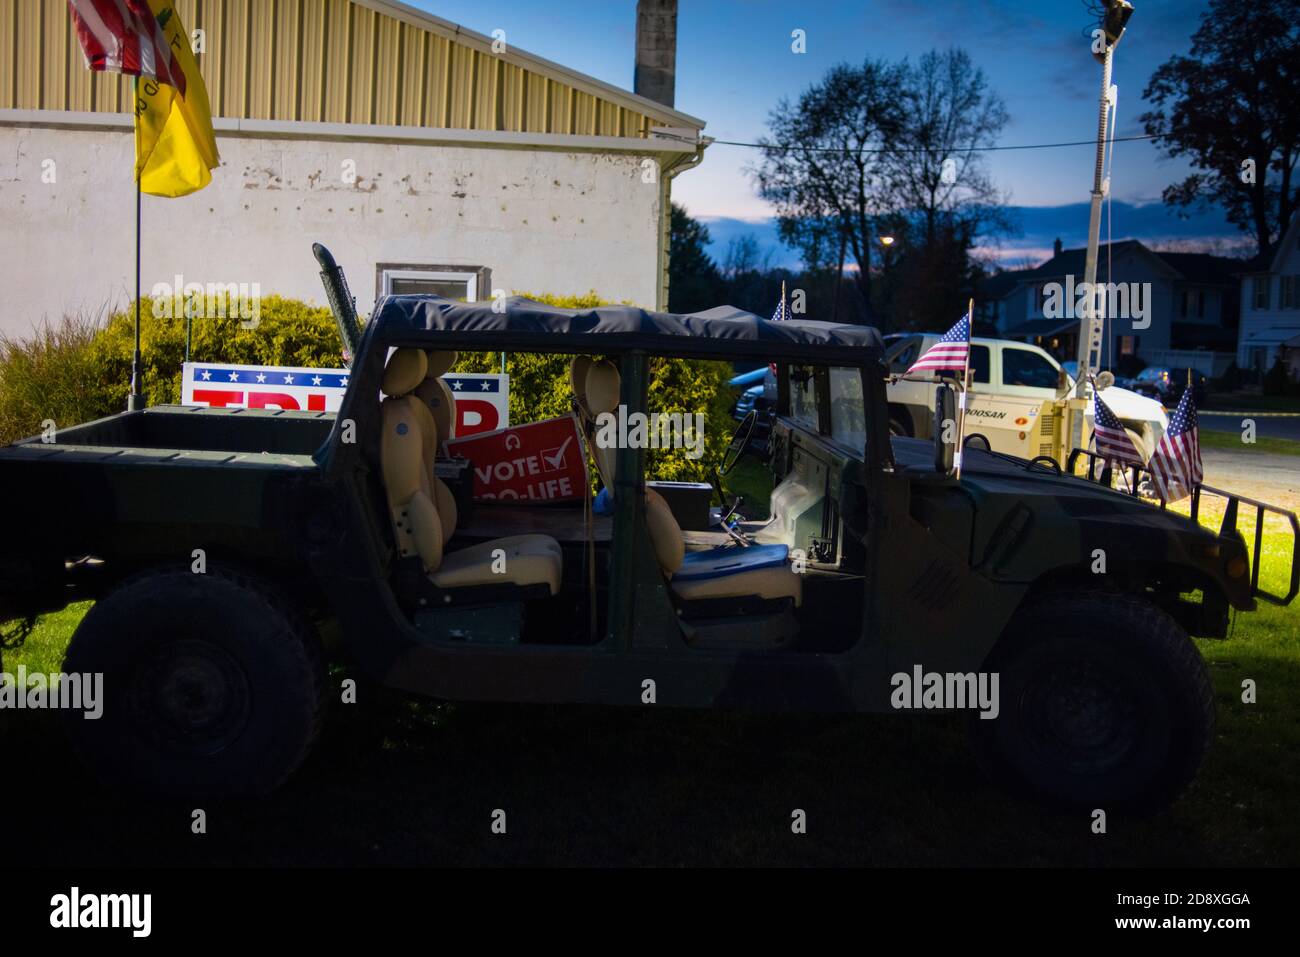 Jeep Fahrzeug stolz zeigt Trump Zeichen einschließlich Second Amendment Grafik, Virginia Motto "Tread on me" in Unterstützung während Trump Rallye, Montou Stockfoto